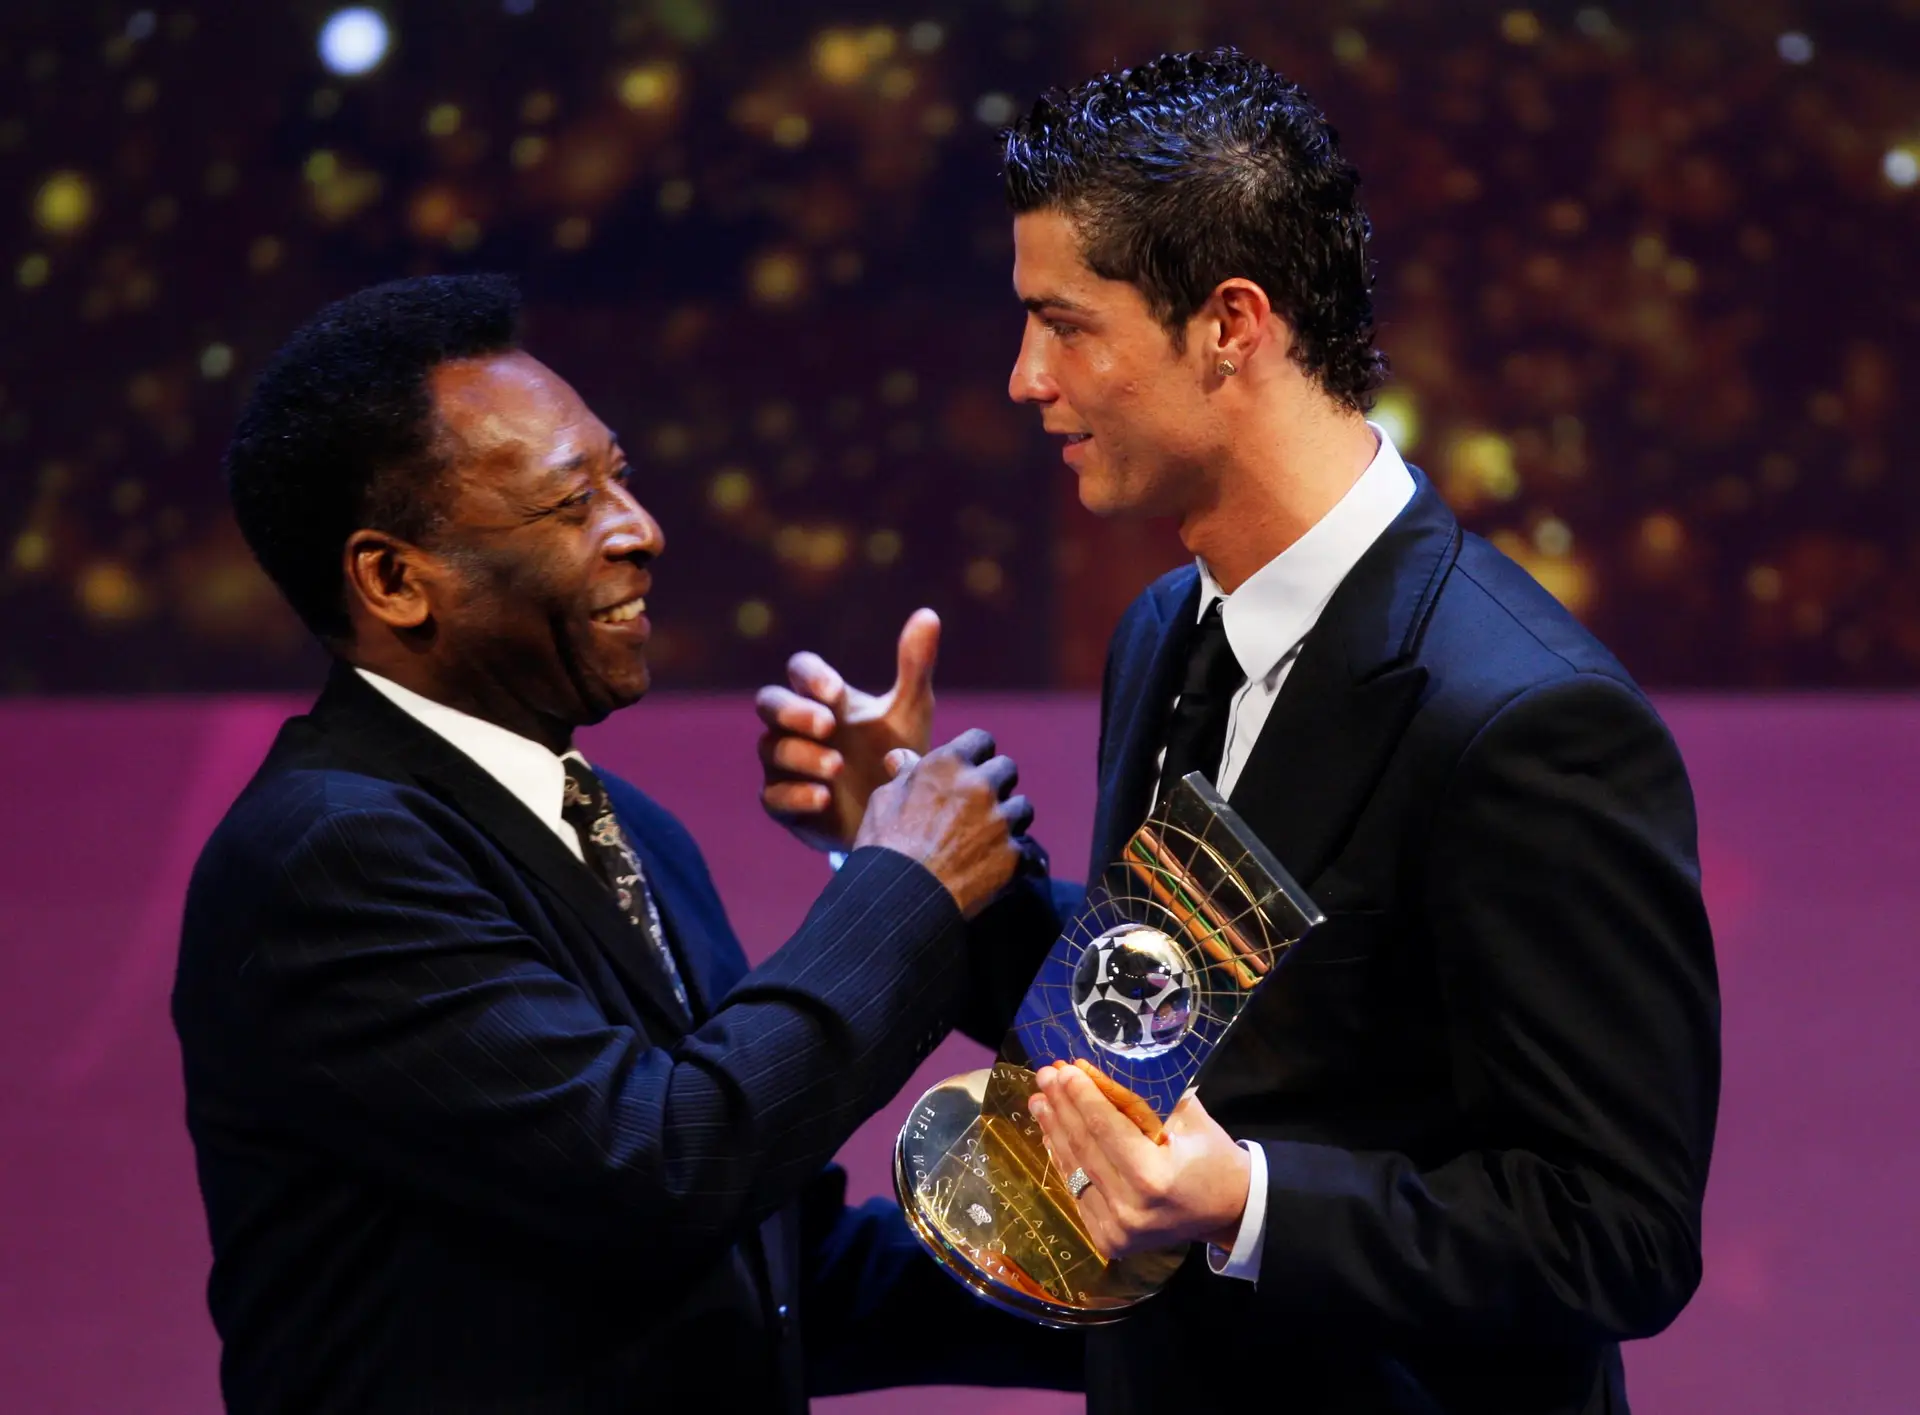 Fundação Pelé premeia Cristiano Ronaldo pela "excelência nos campos e fora deles"